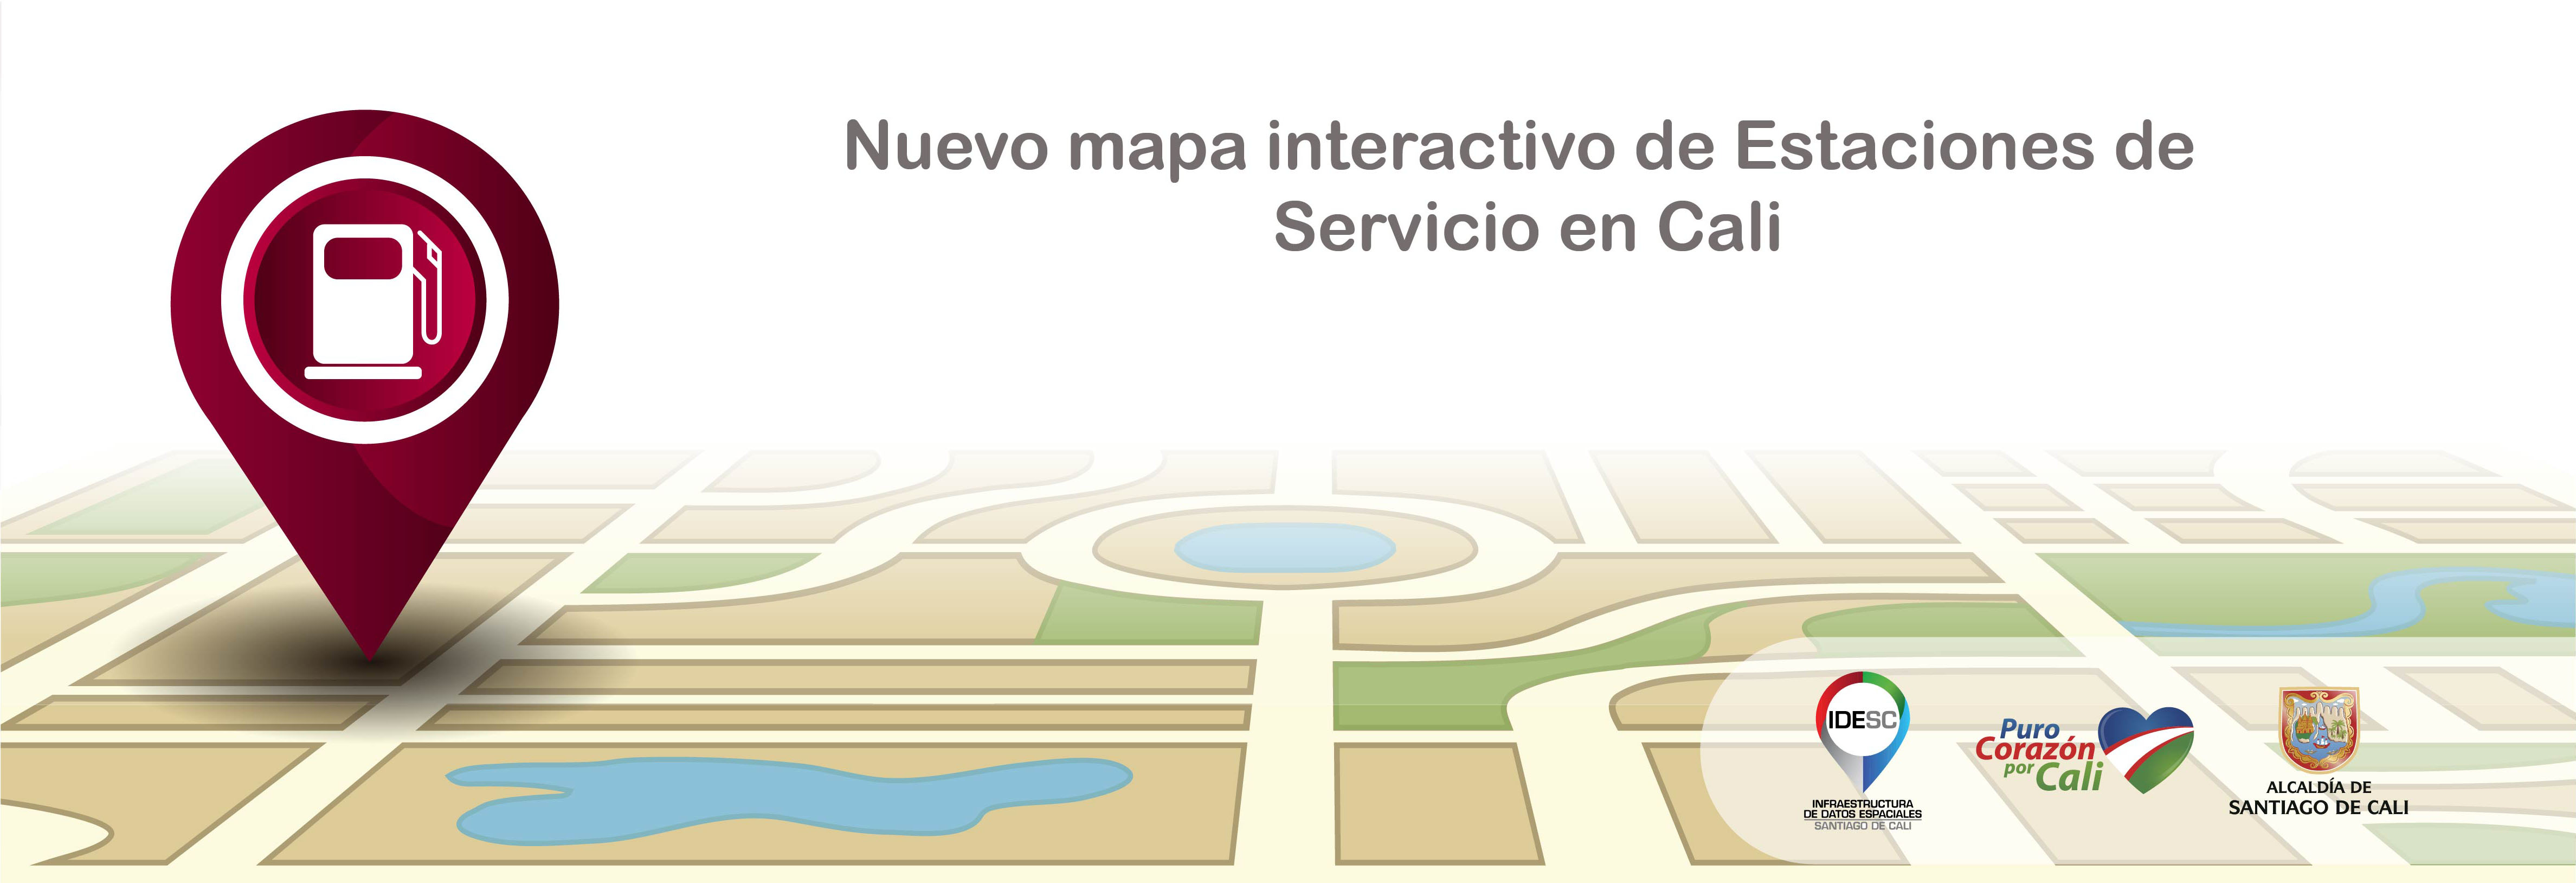 Pieza gráfica que contiene la imagen de un mapa sobre el cual se posa un ícono de una estación de servicio y aún lado los logos institucionales.